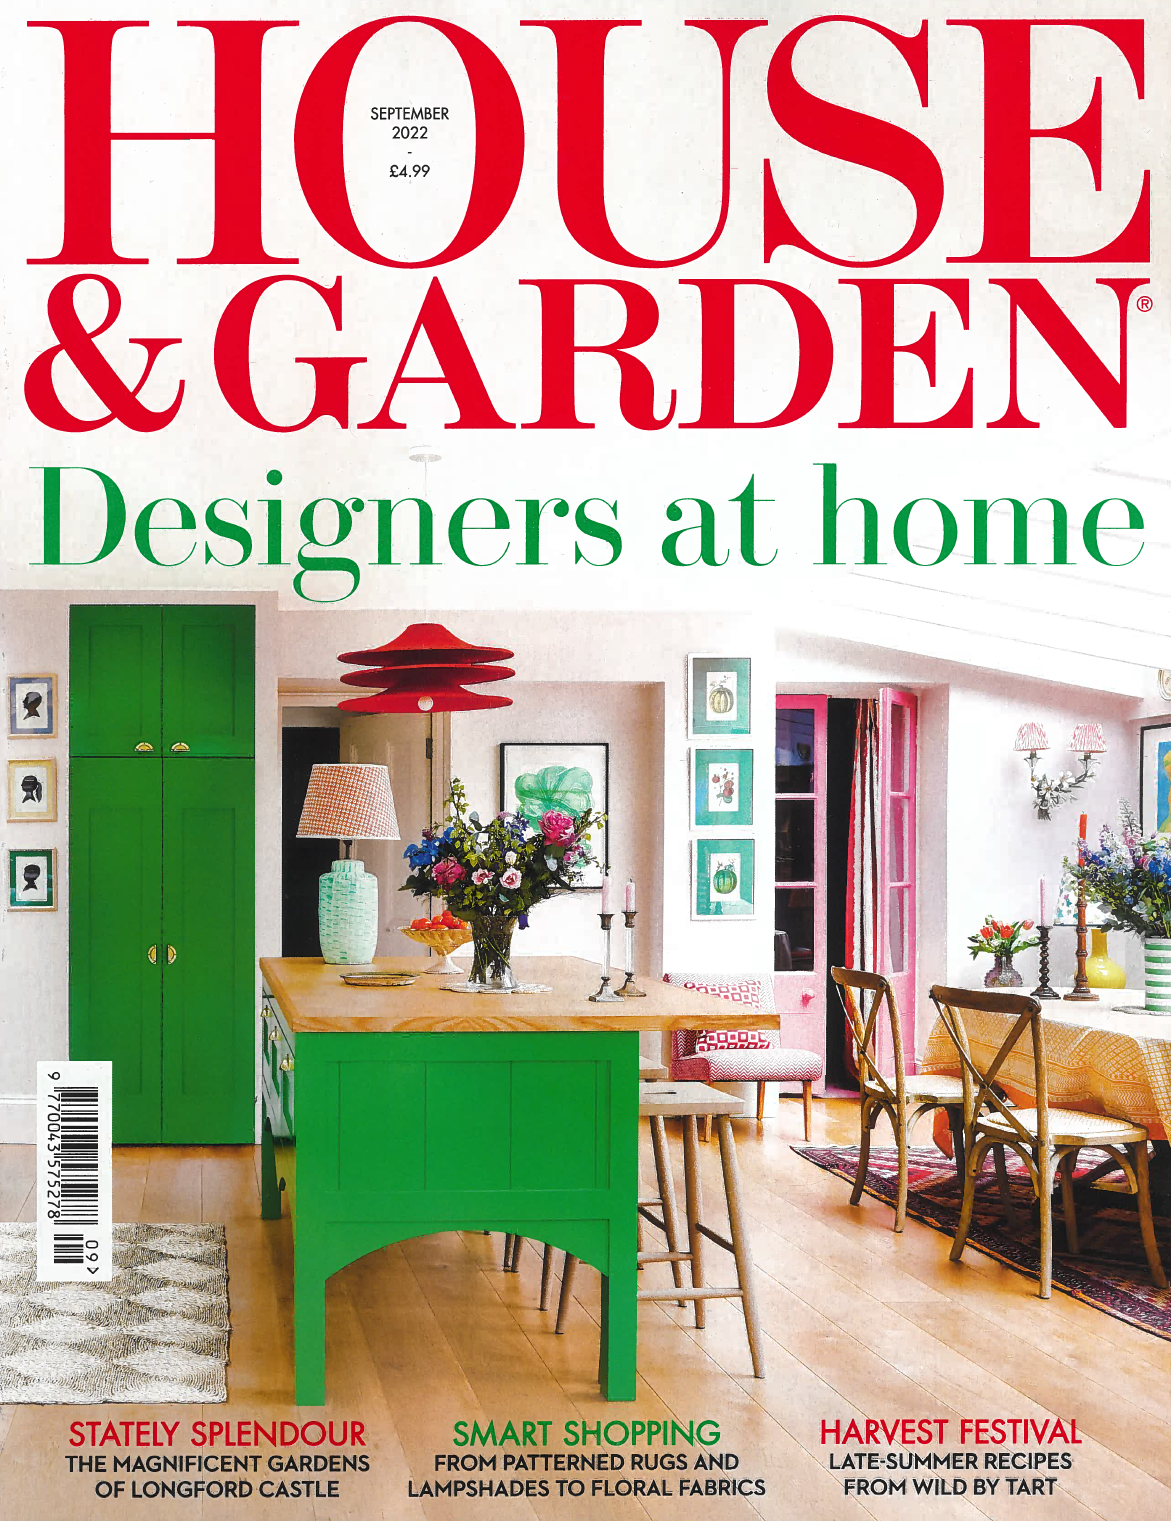 Magazine cover featuring designer kitchen